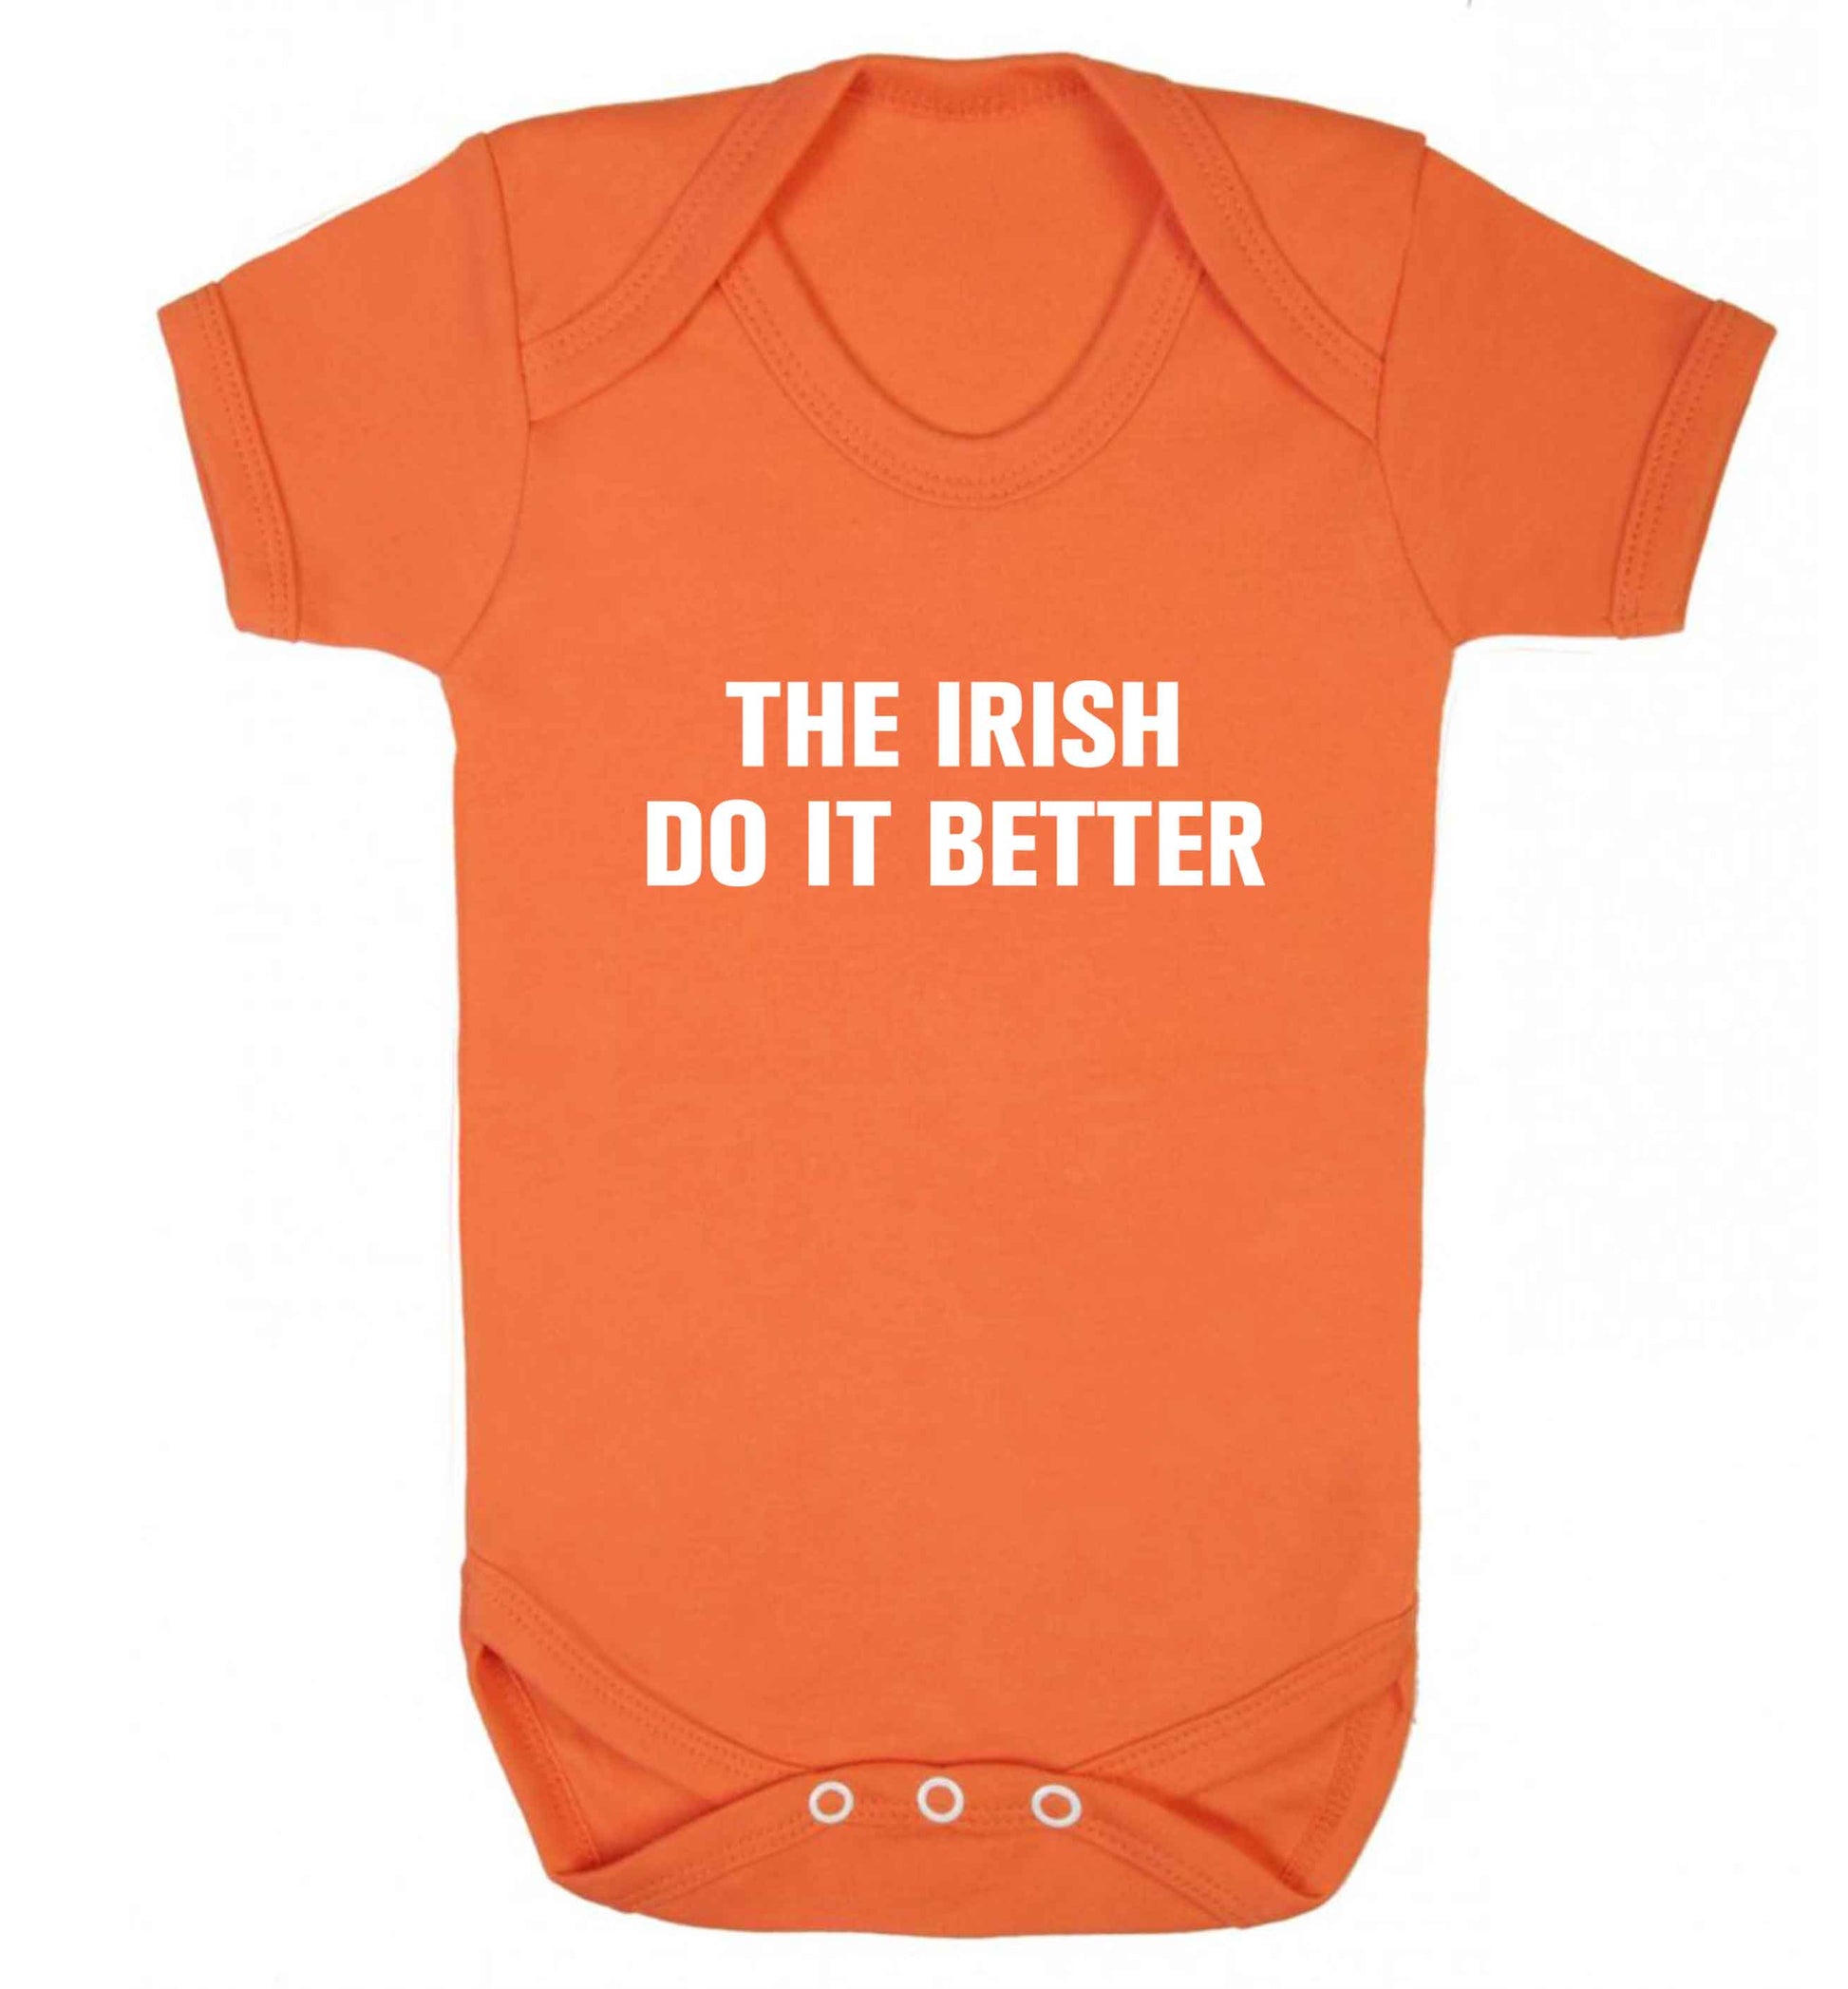 The Irish do it better baby vest orange 18-24 months